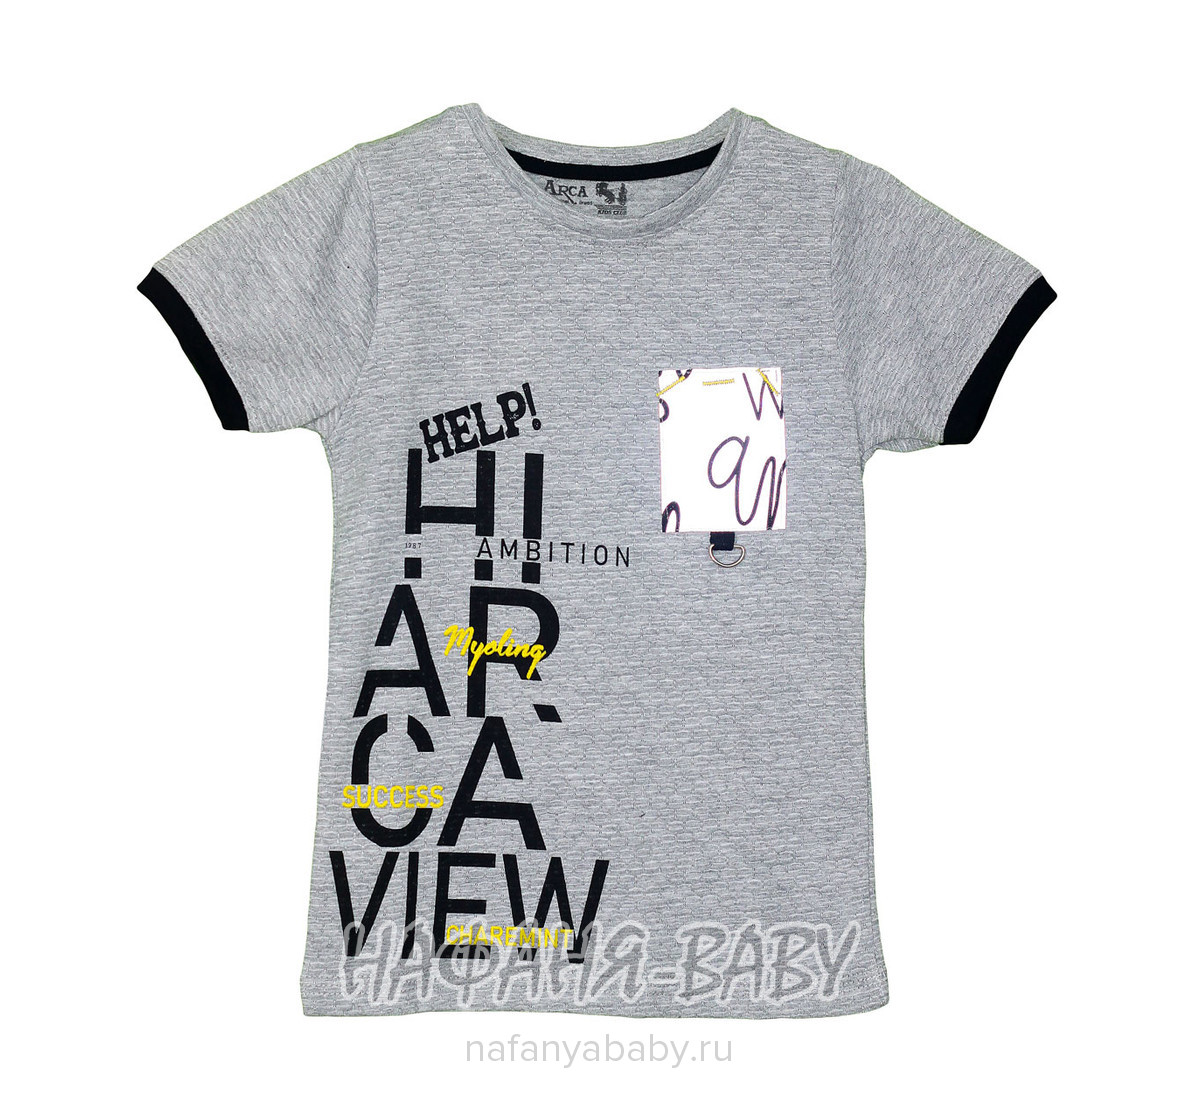 Детская футболка ARCA, купить в интернет магазине Нафаня. арт: 6014-2.